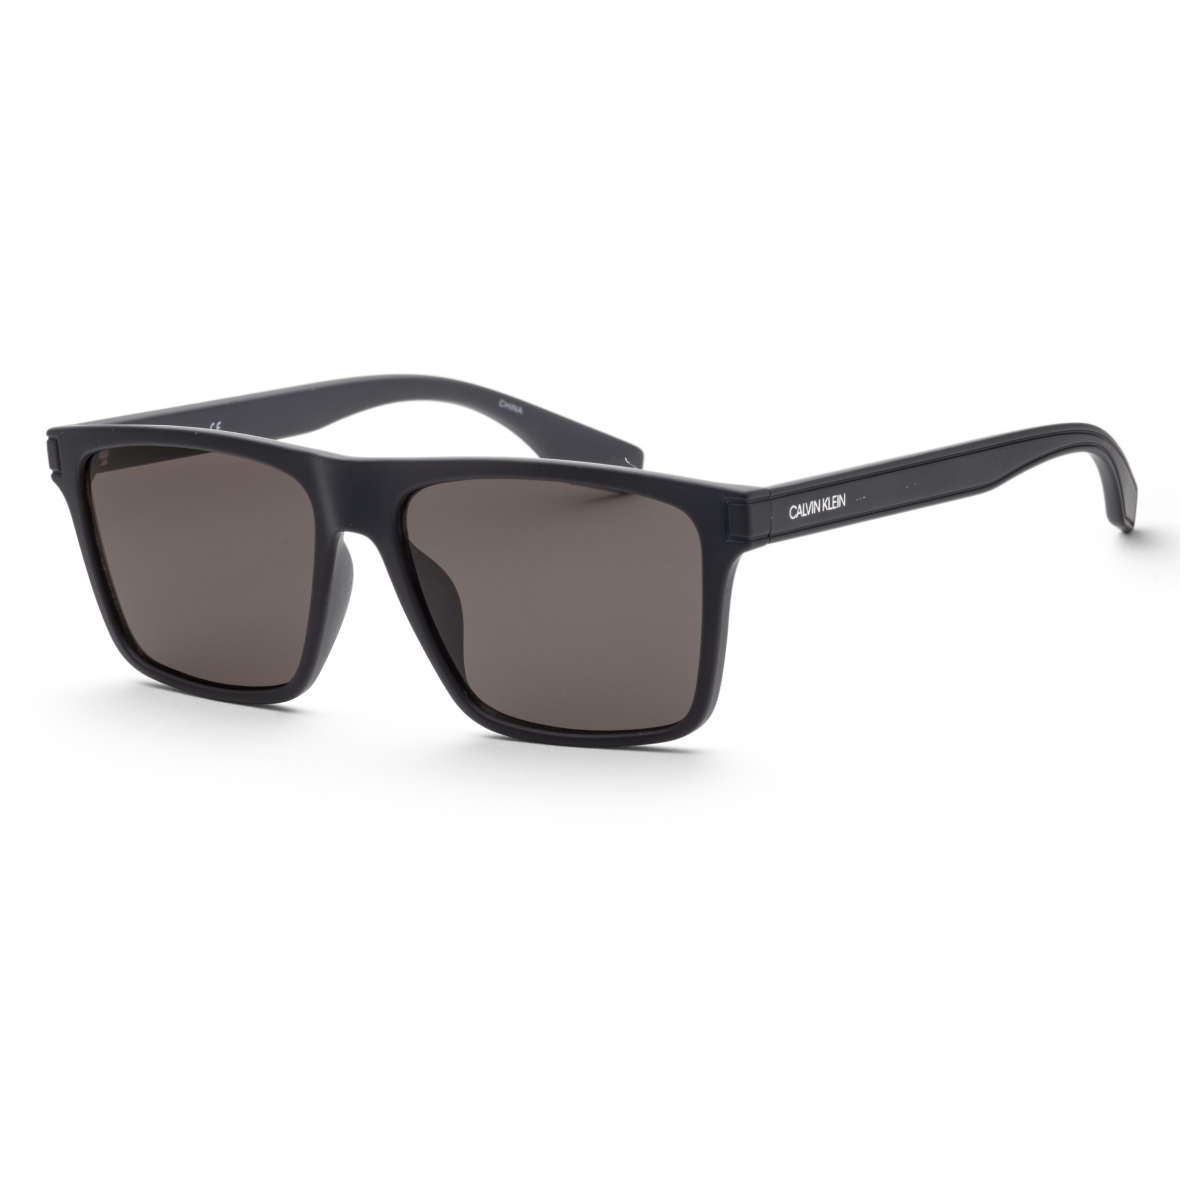 CALVIN KLEIN Fashion Men's  Sunglasses SKU: CK20521S-410    UPC: 883901128505